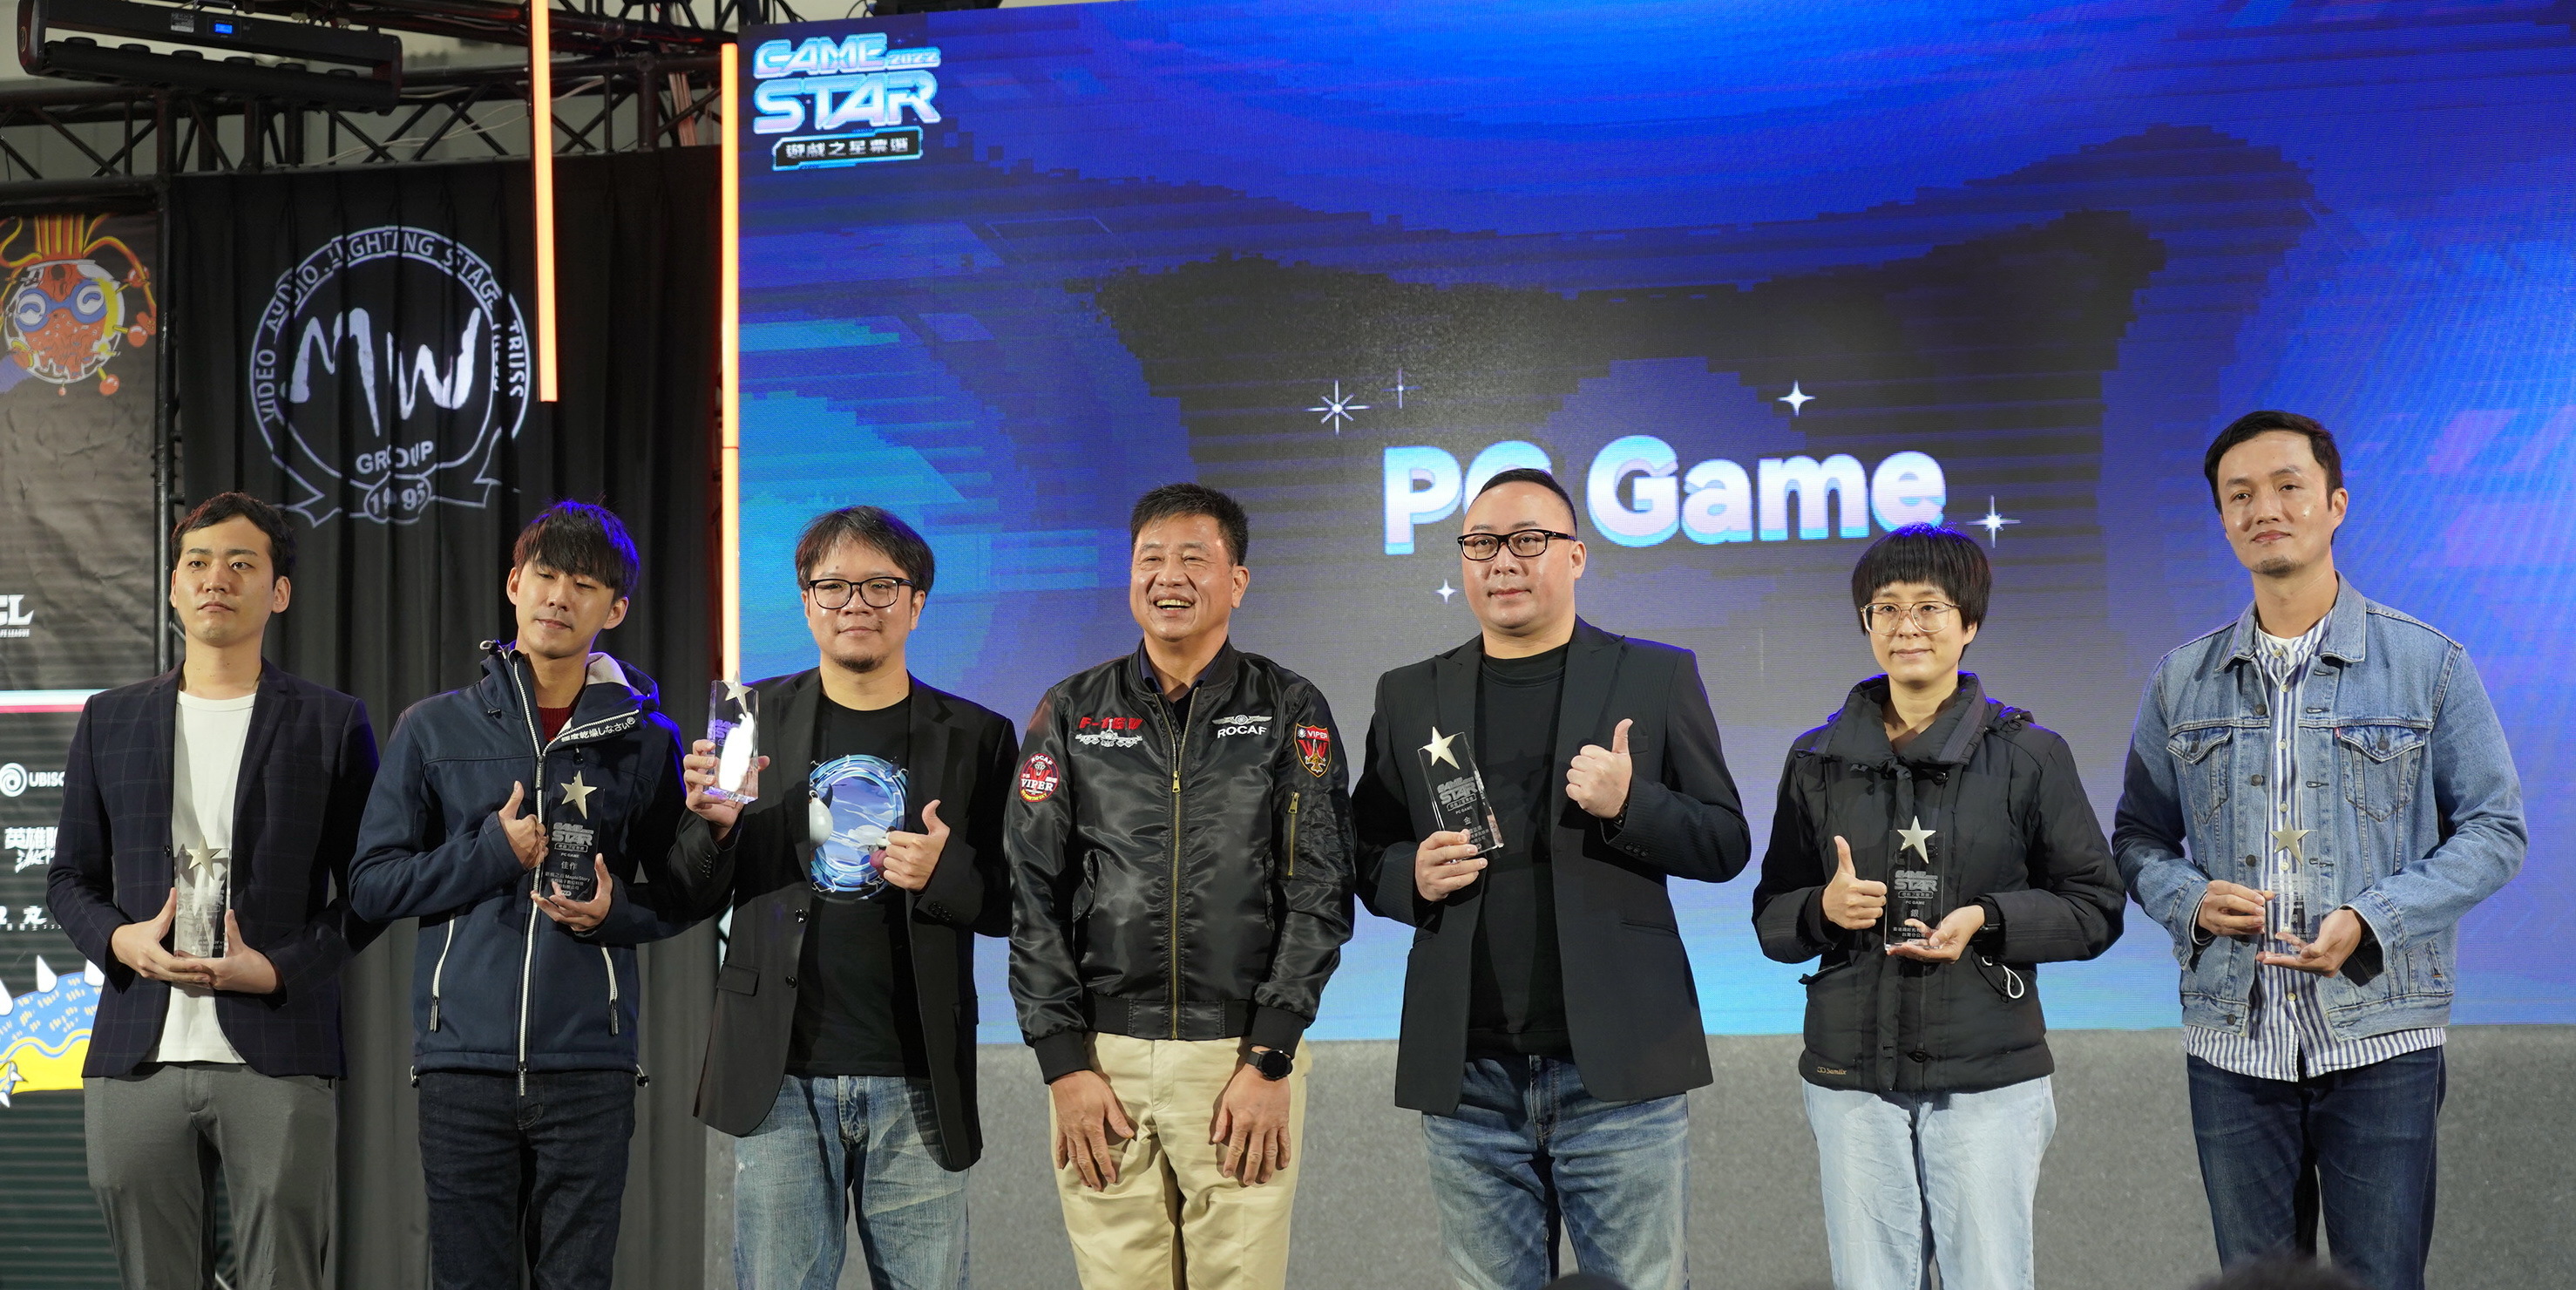 「GAME STAR 游戏之星」揭晓得奖名单 《艾尔登法环》夺 PC、TV 金奖插图6